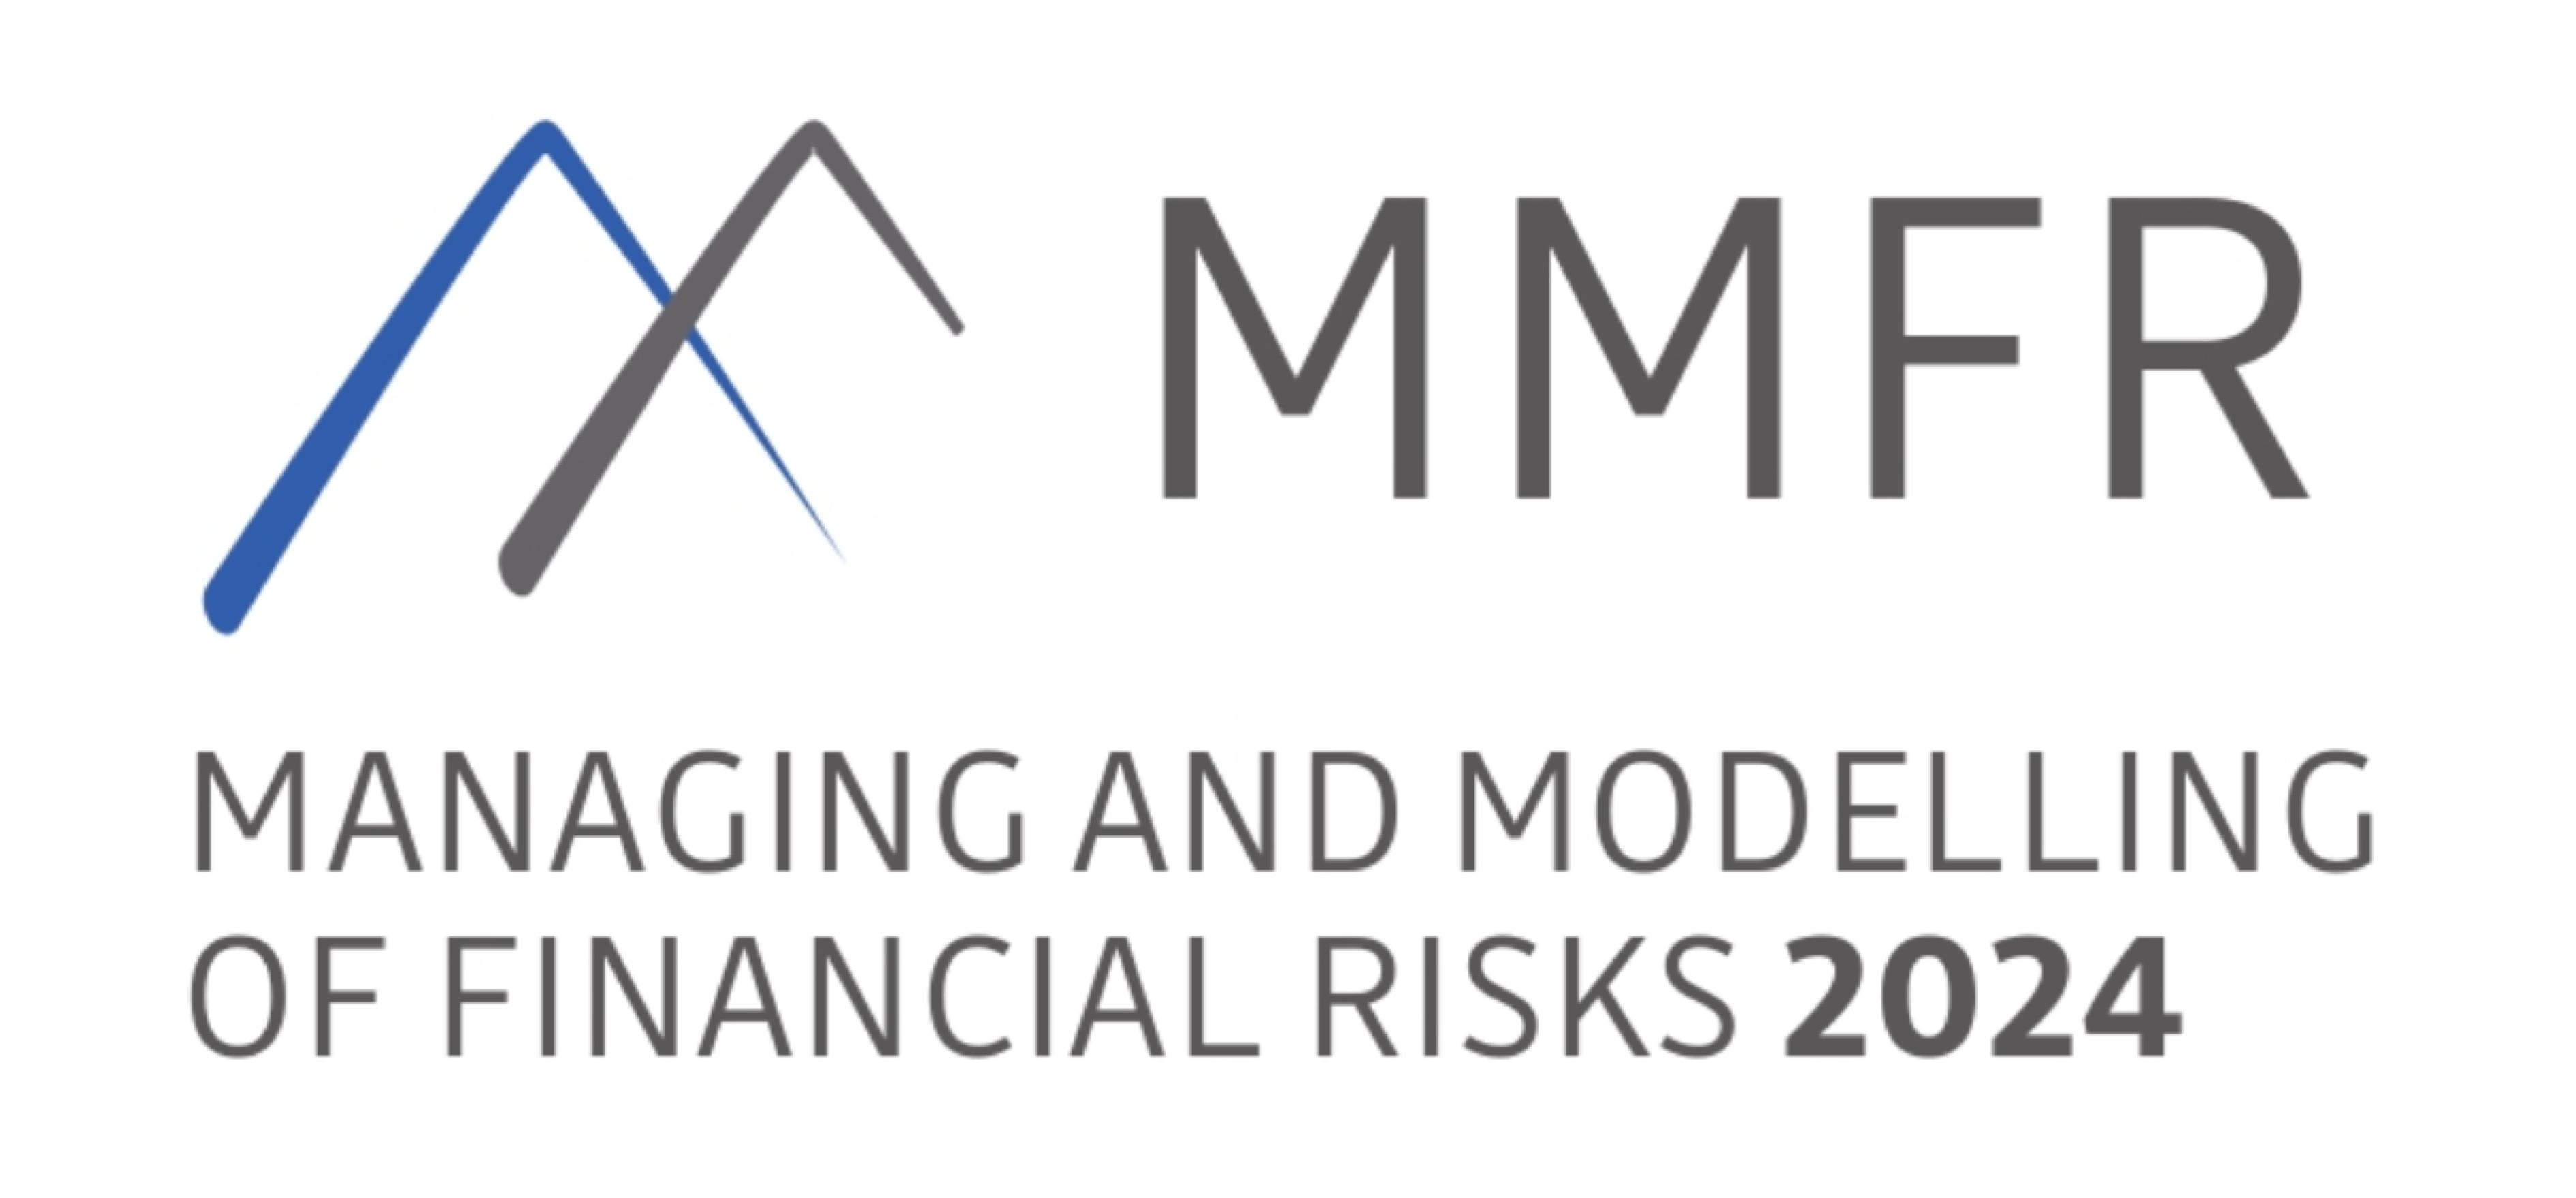 MMFR-logo-2024-new